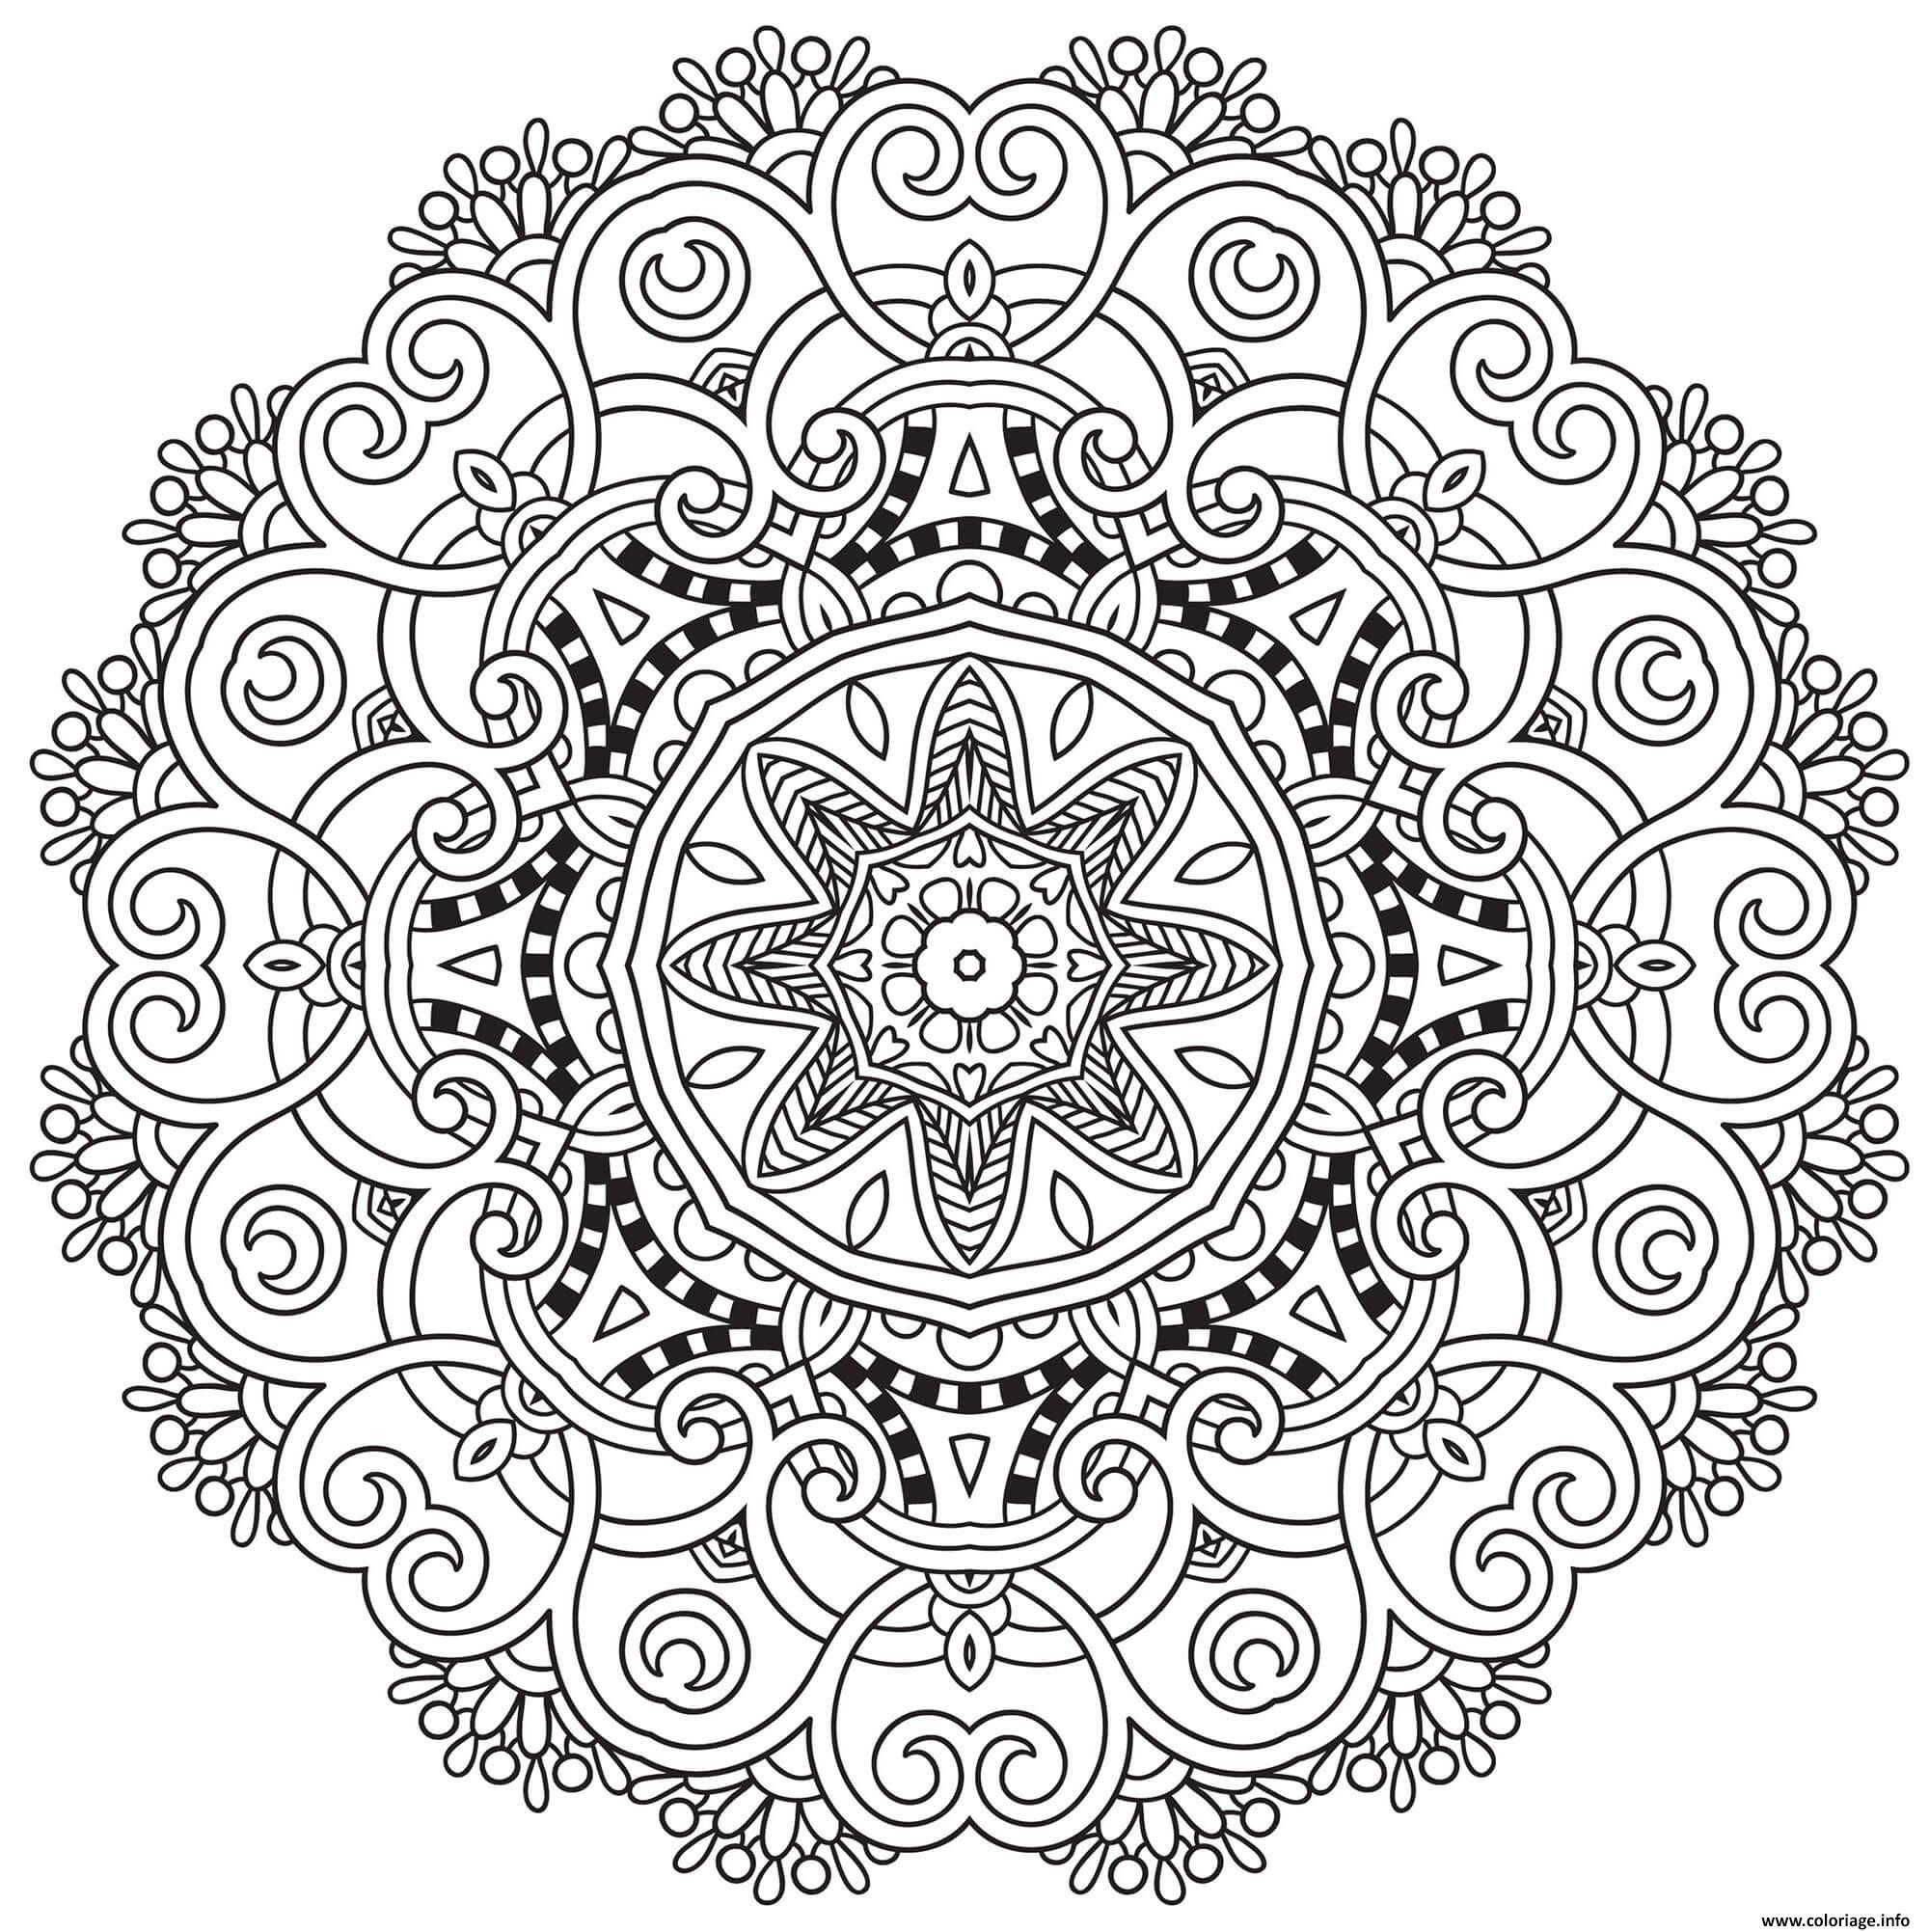 Coloriage Incredible Mandala Adulte Dessin Mandala De Noel À Imprimer encequiconcerne Coloriage Adulte A Imprimer